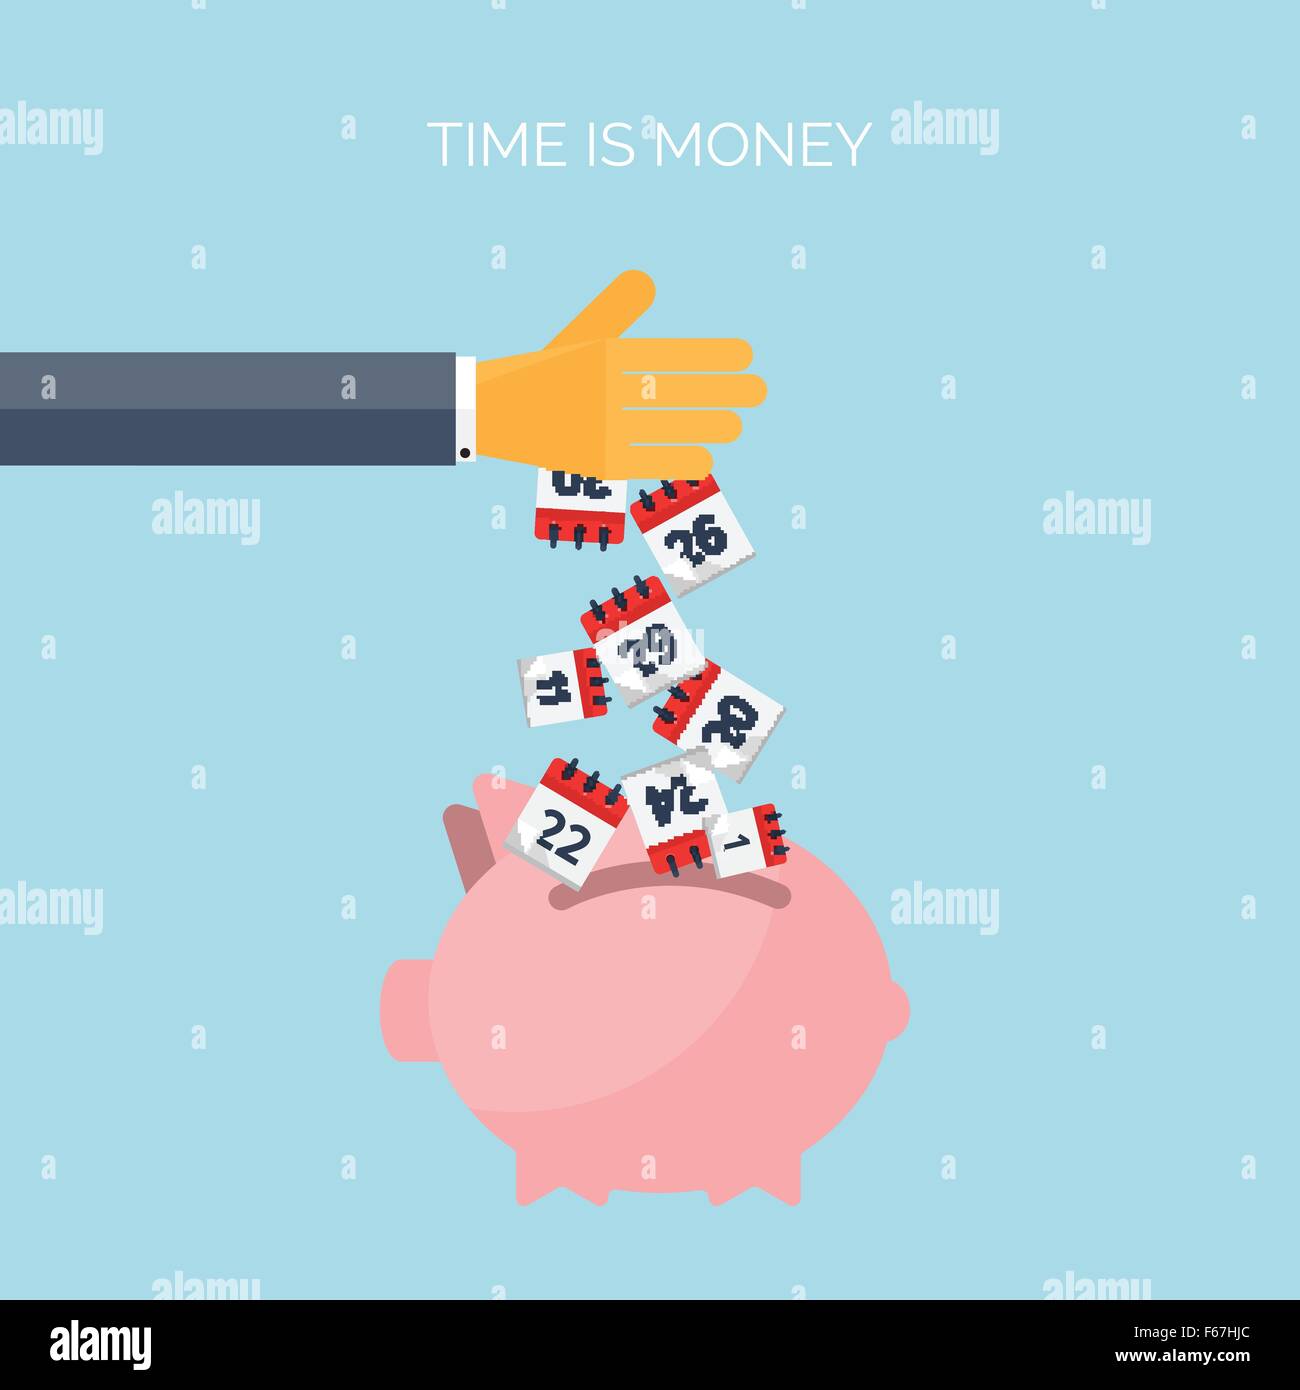 El Tiempo Es Dinero Concepto Plano De Fondo Movey El Ahorro Gestión